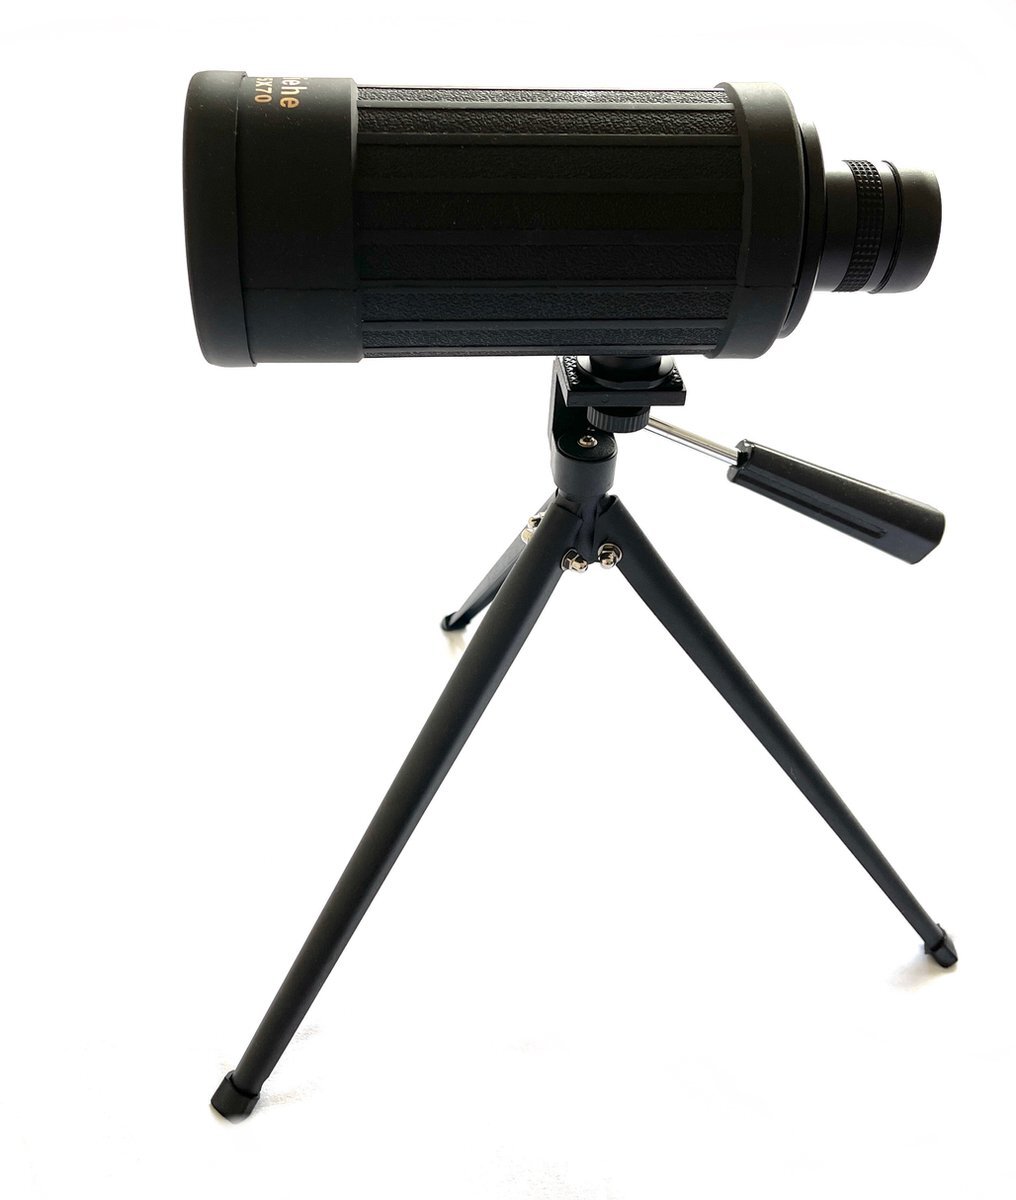 Jiehe Monokijker - Verrekijker - Monoculair verrekijker - 15x70mm - Maximale vergroting 15x - Zwart - Incl. statief